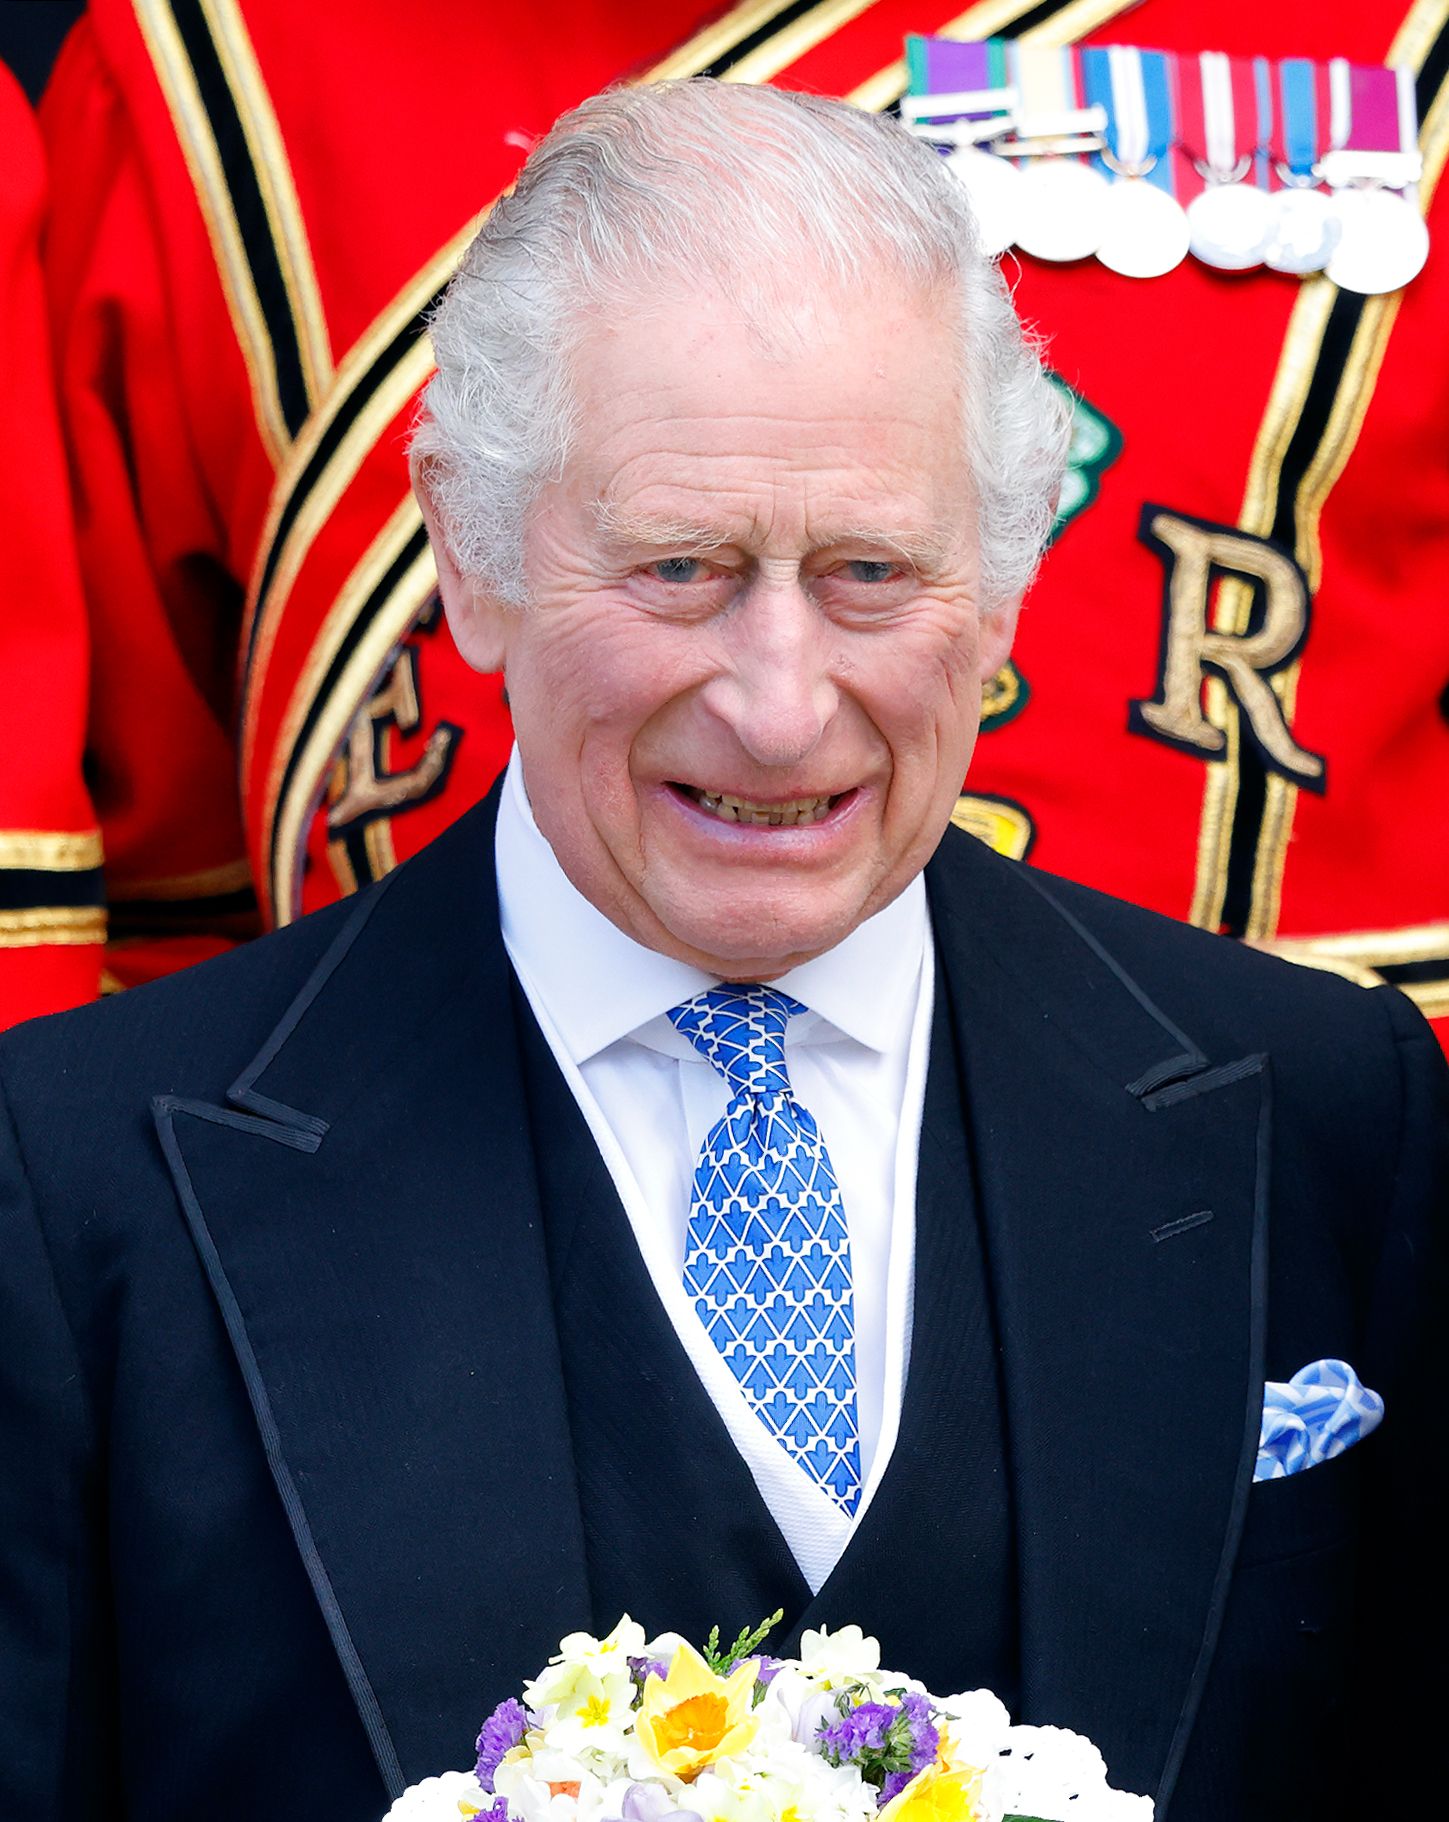 Le roi Charles III assiste à l'office royal du bordeaux à York Minster le 6 avril 2023 à York, en Angleterre. | Source : Getty Images